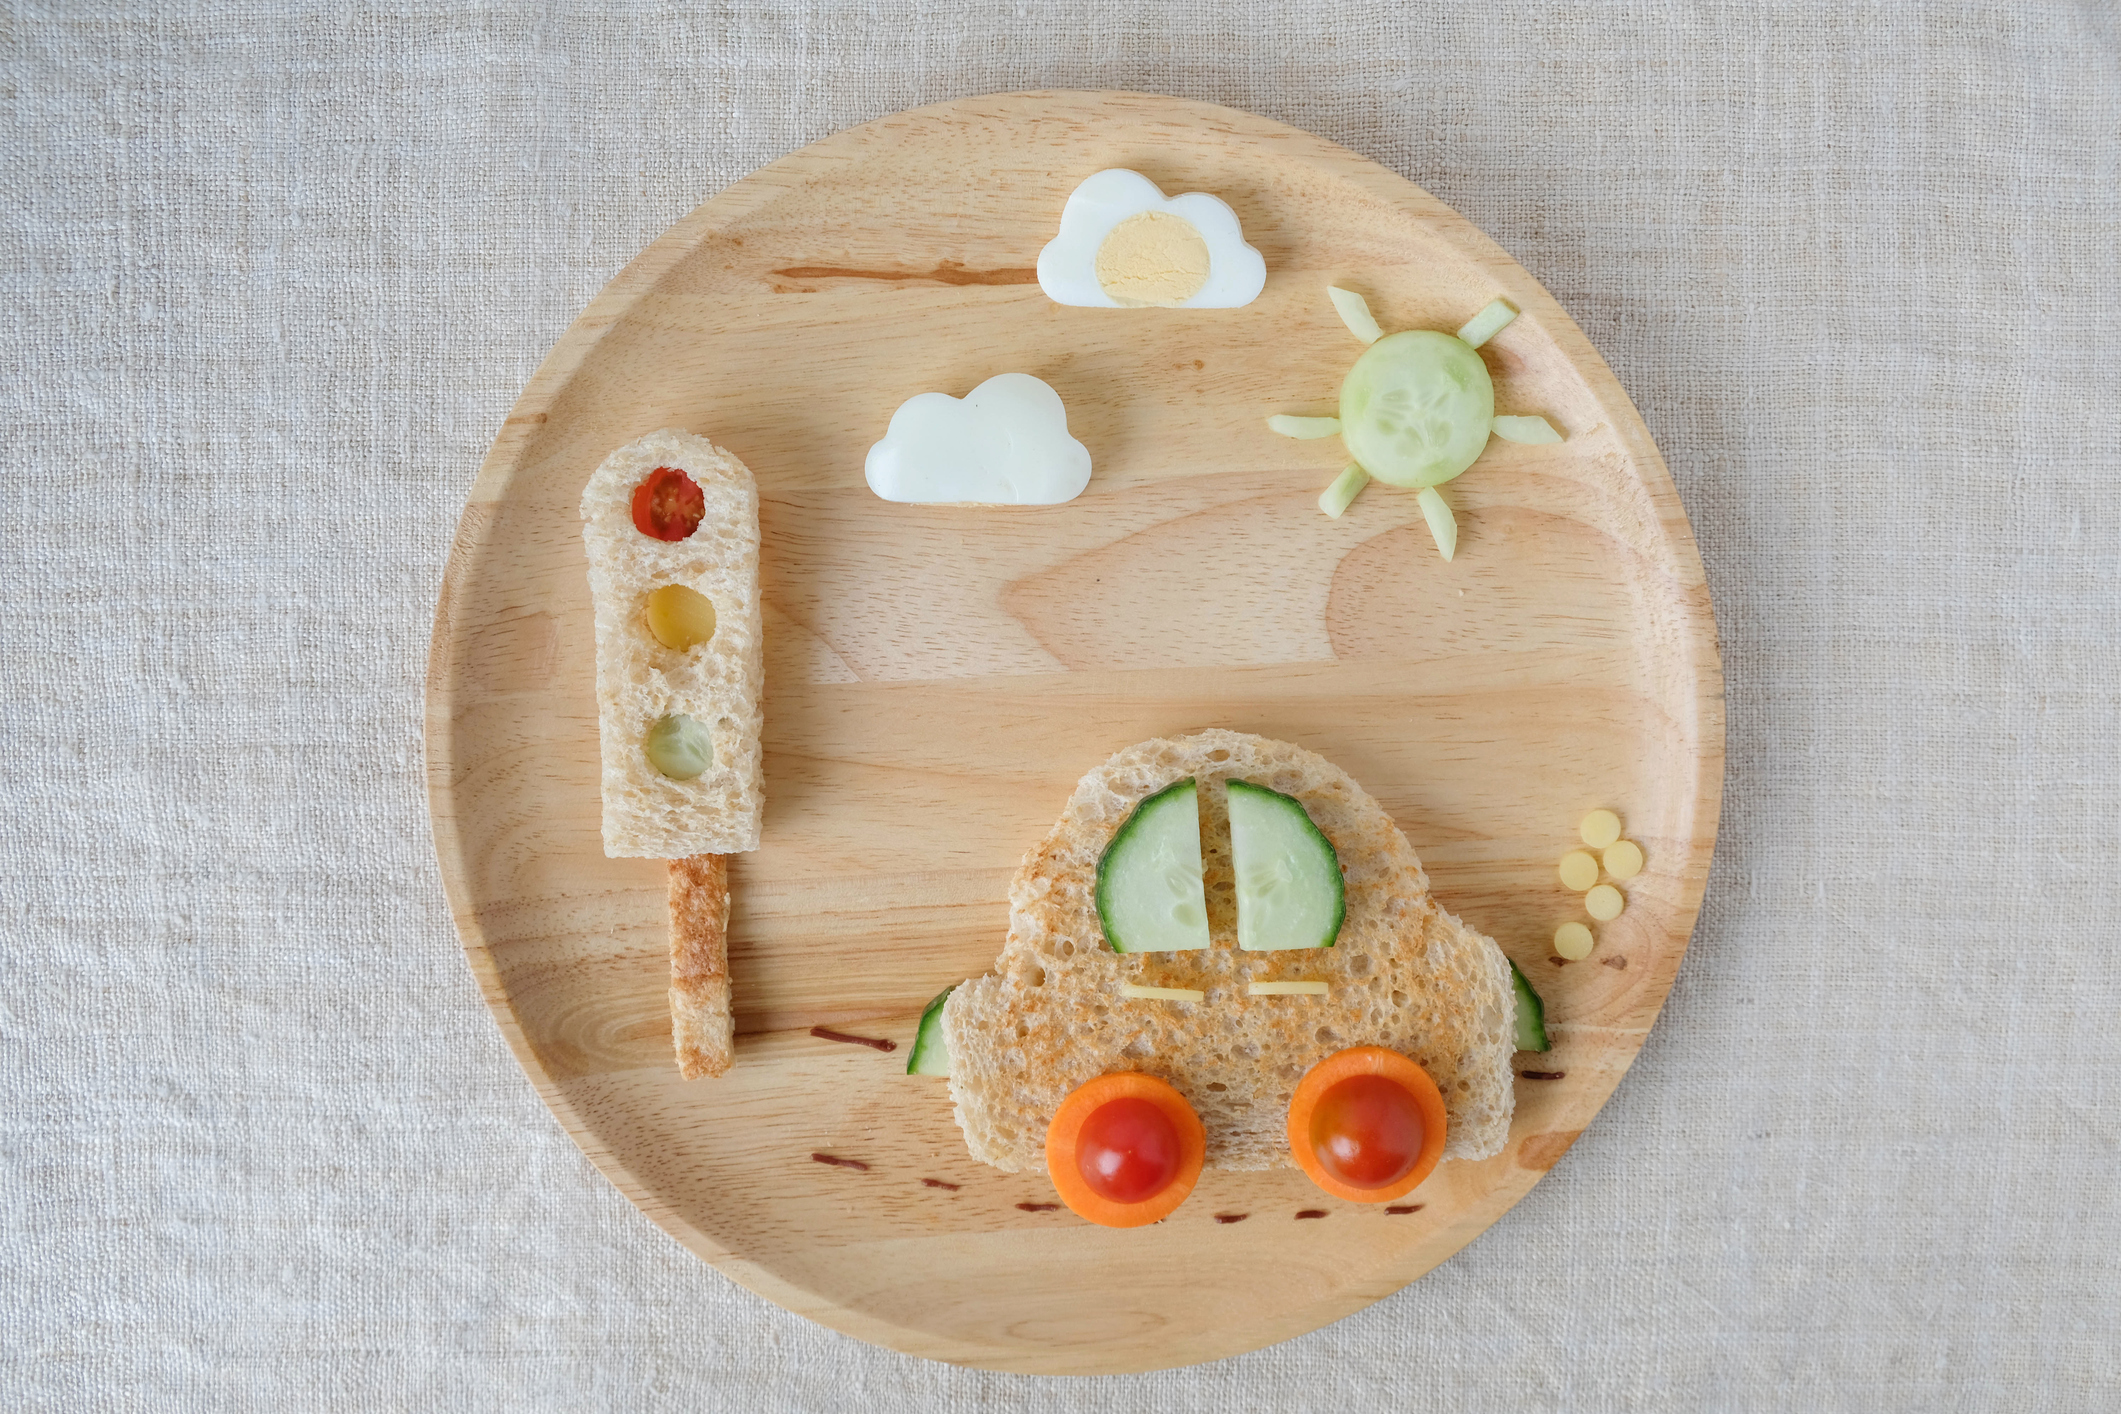 Ľahké občerstvenie na tanieri v tvare autíčka. Rajčiny, mrkva, uhorka, chleba, vajce